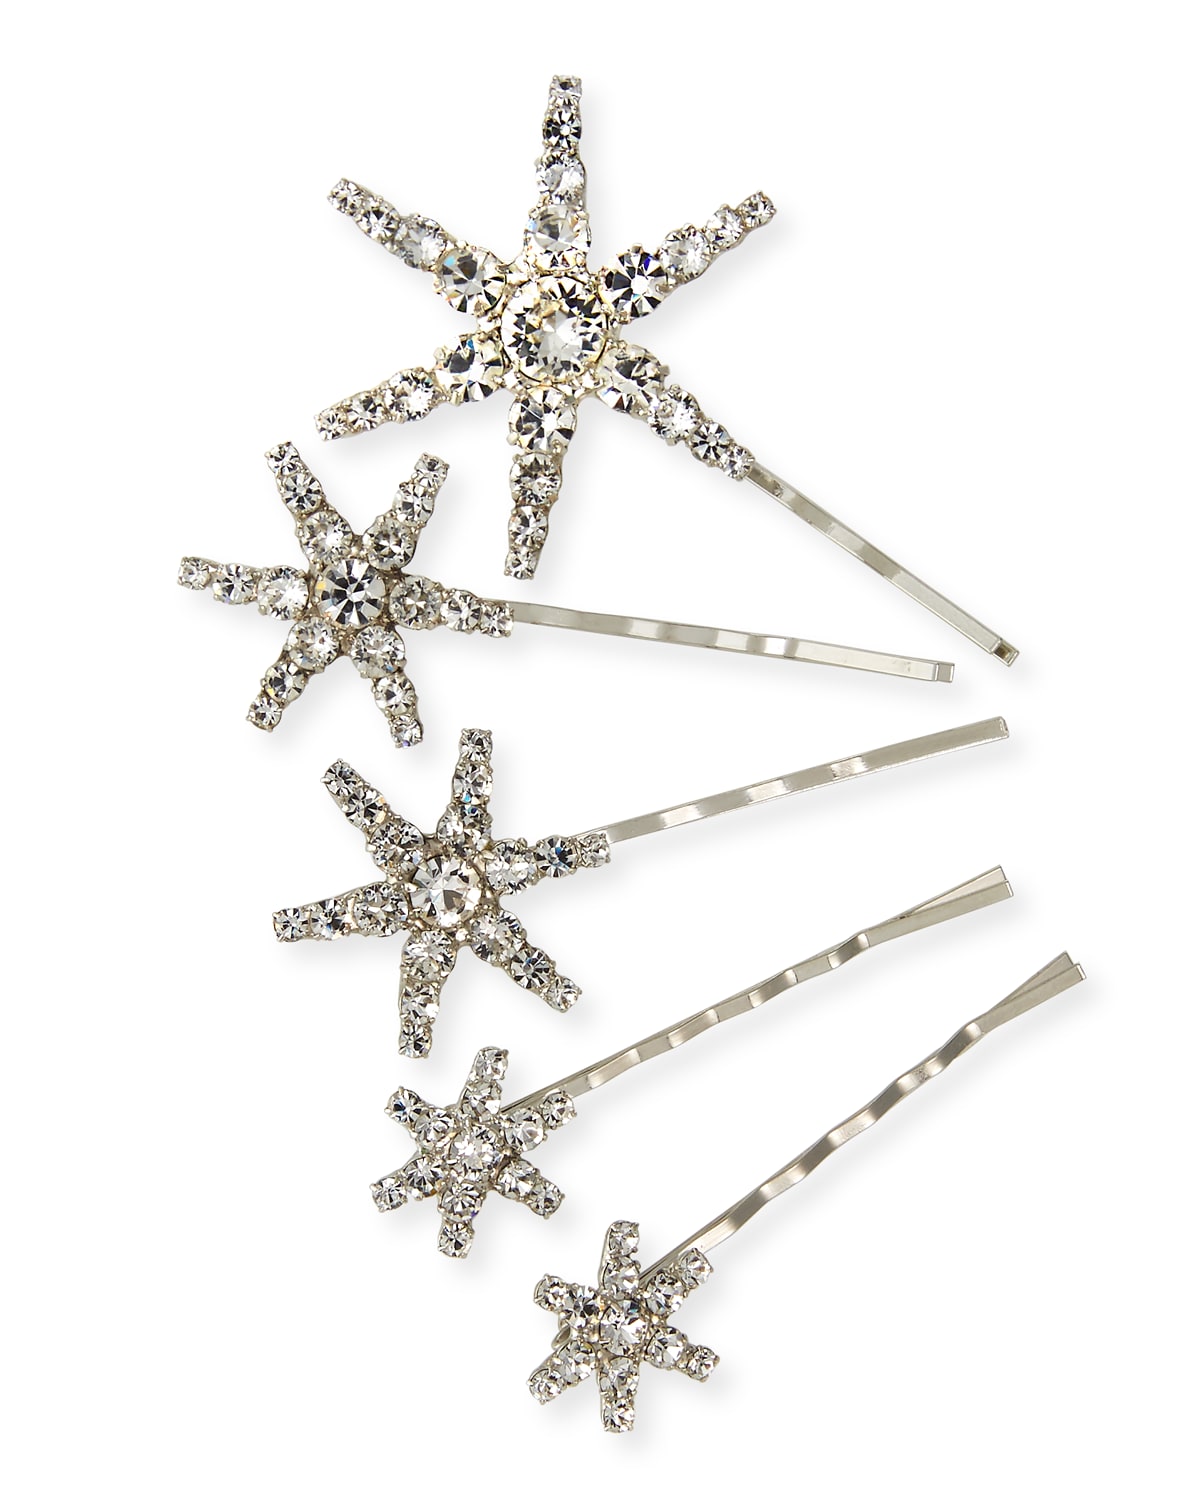 Jennifer Behr Vespera Crystal Embellished Bobby Pins, Set of 5